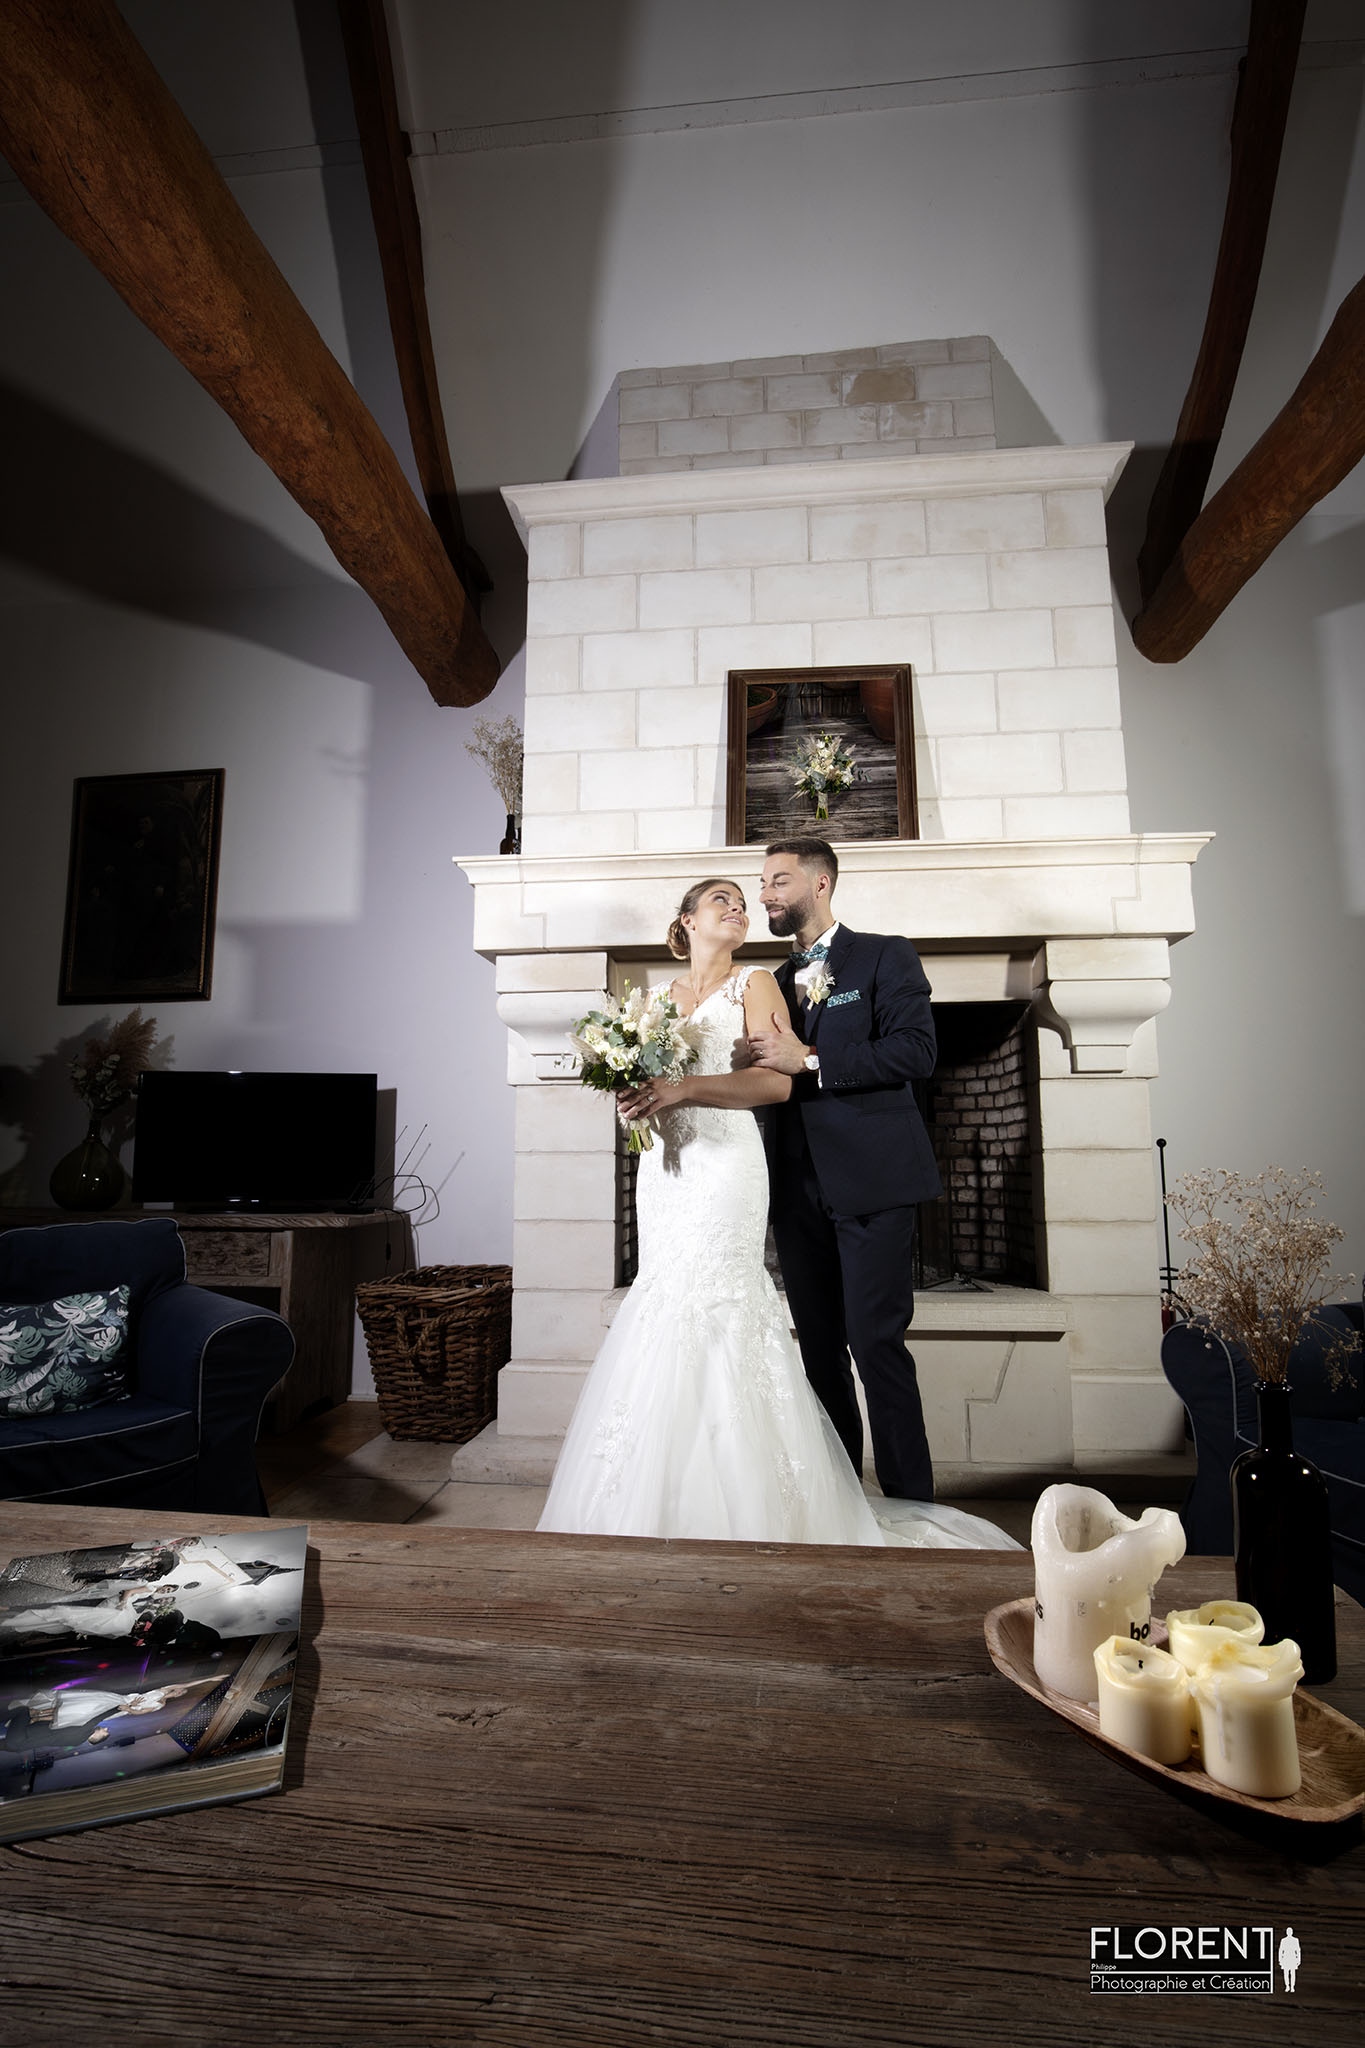 Mariage le touquet les mariés posent amoureusement devant la cheminée fanie photographe florent studio boulogne sur mer lille paris